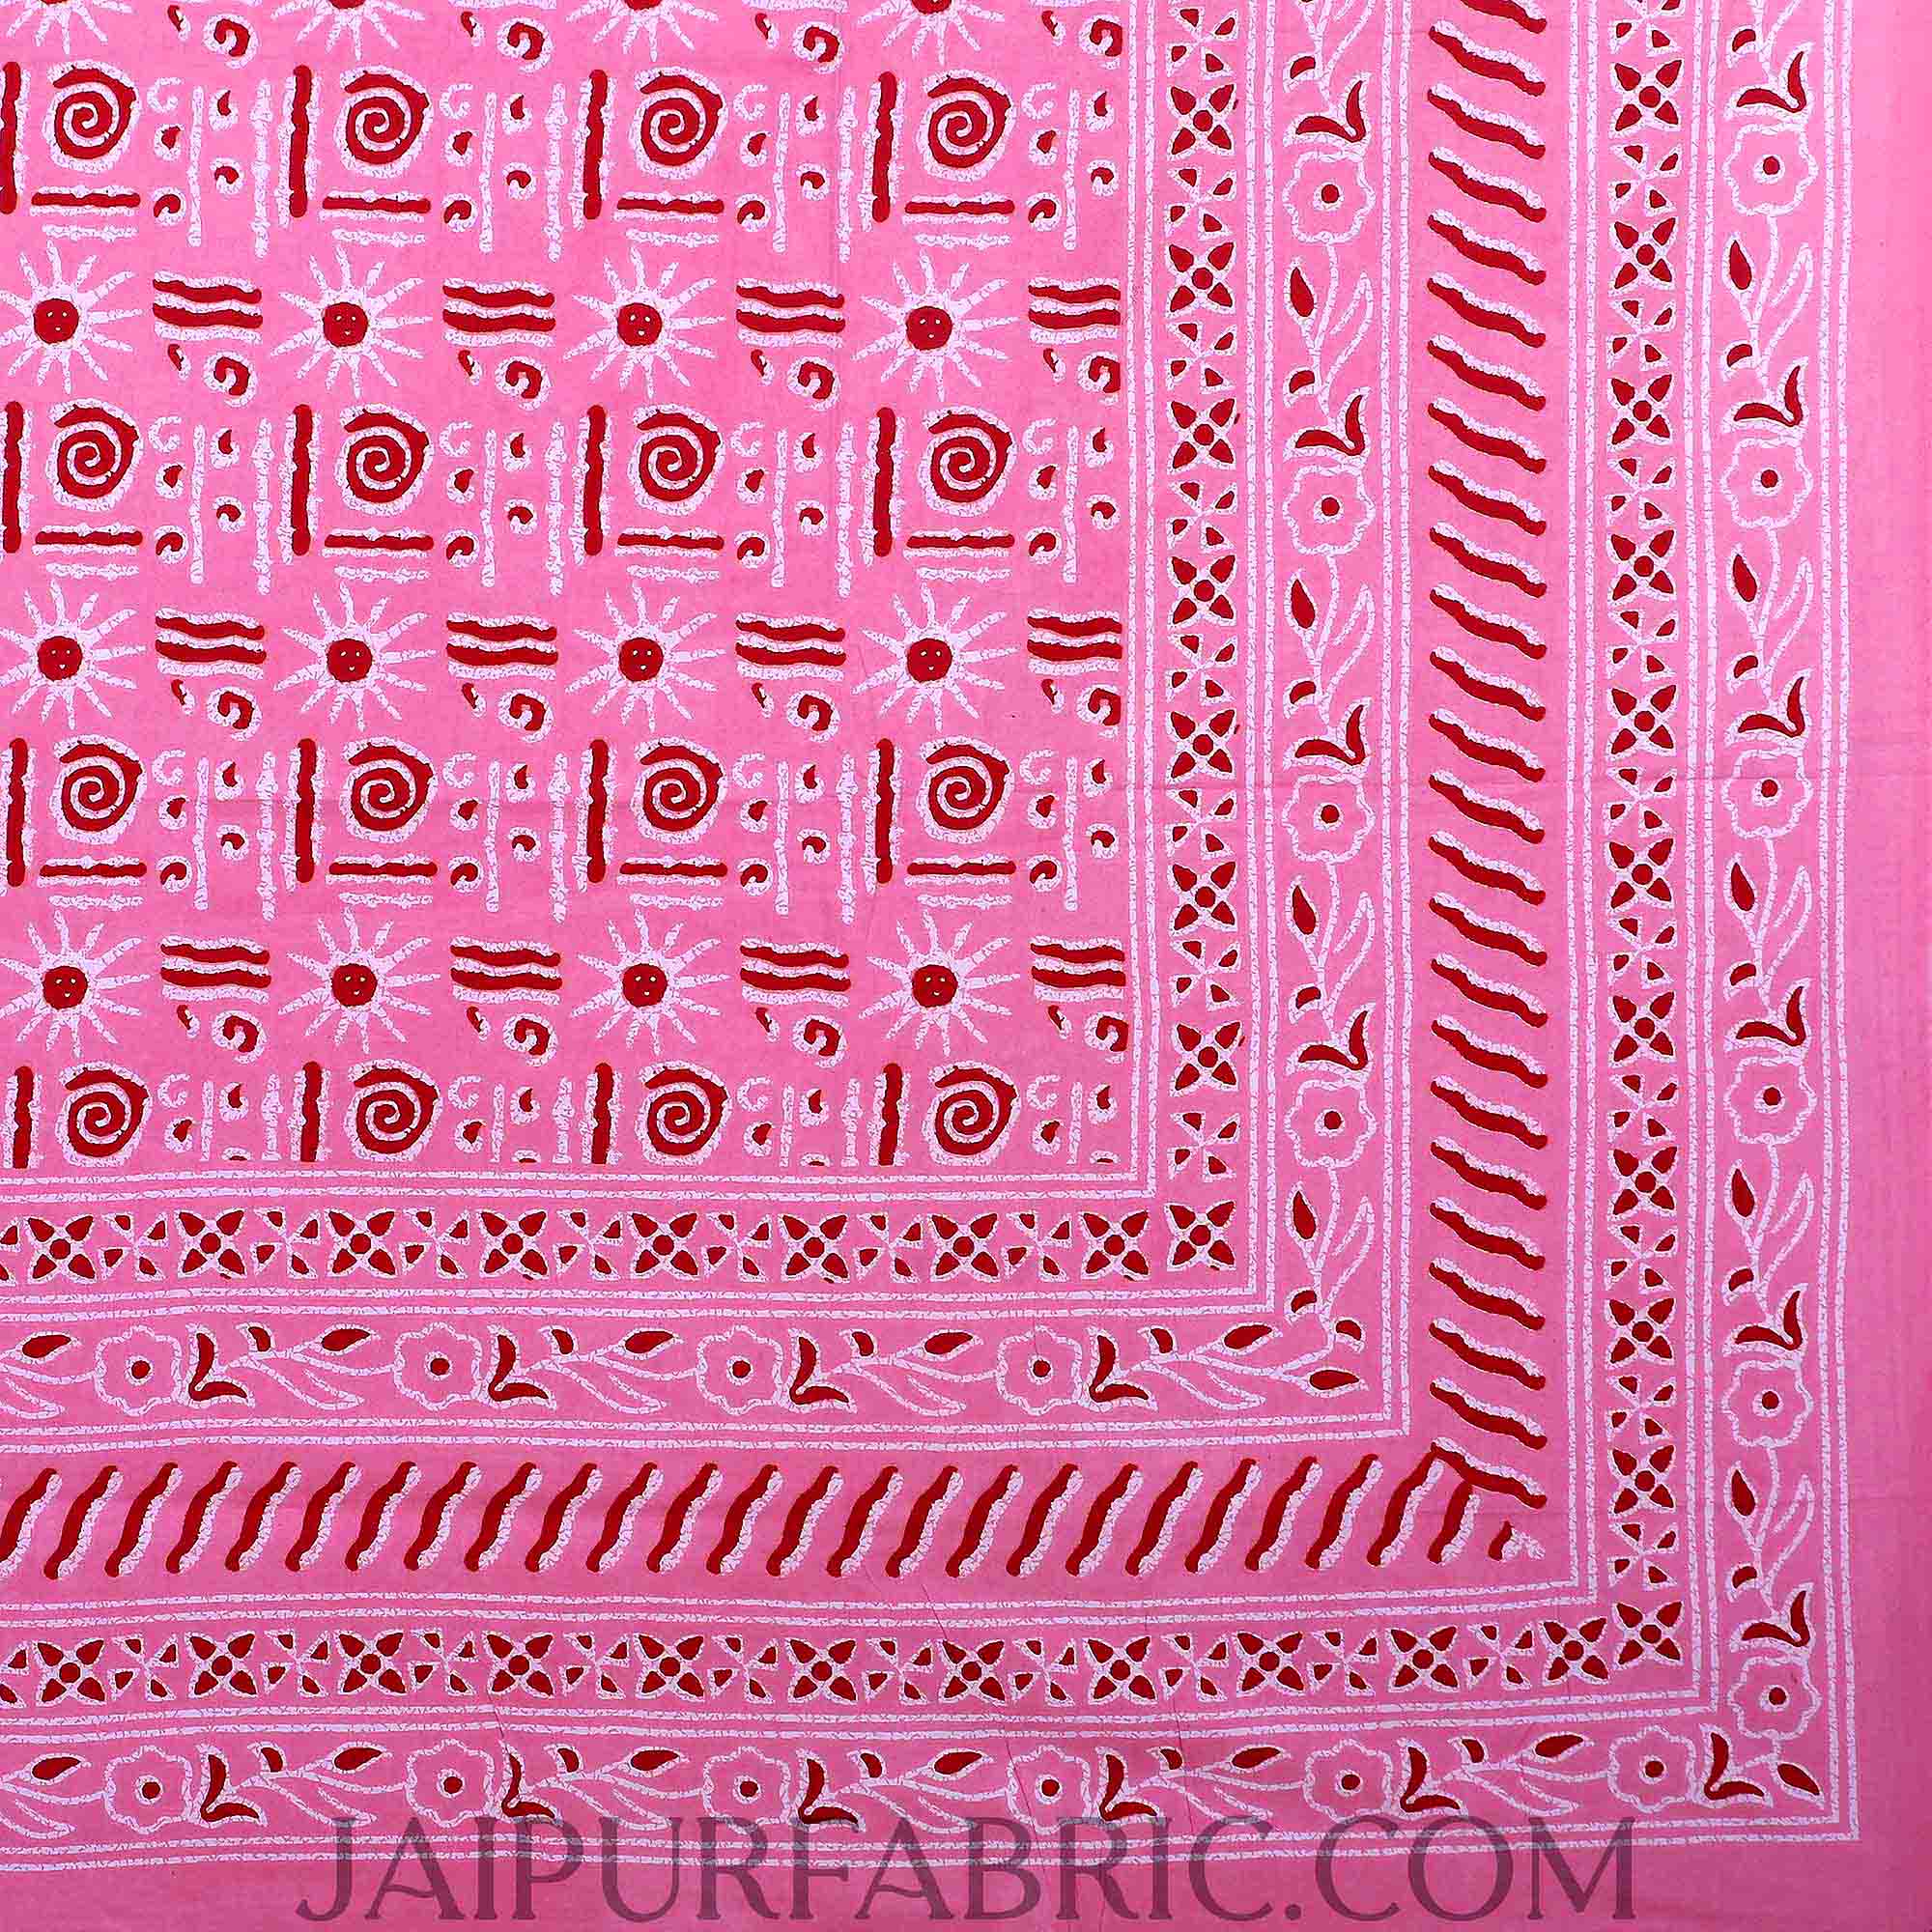 Pink Modern Art Double Bedsheet